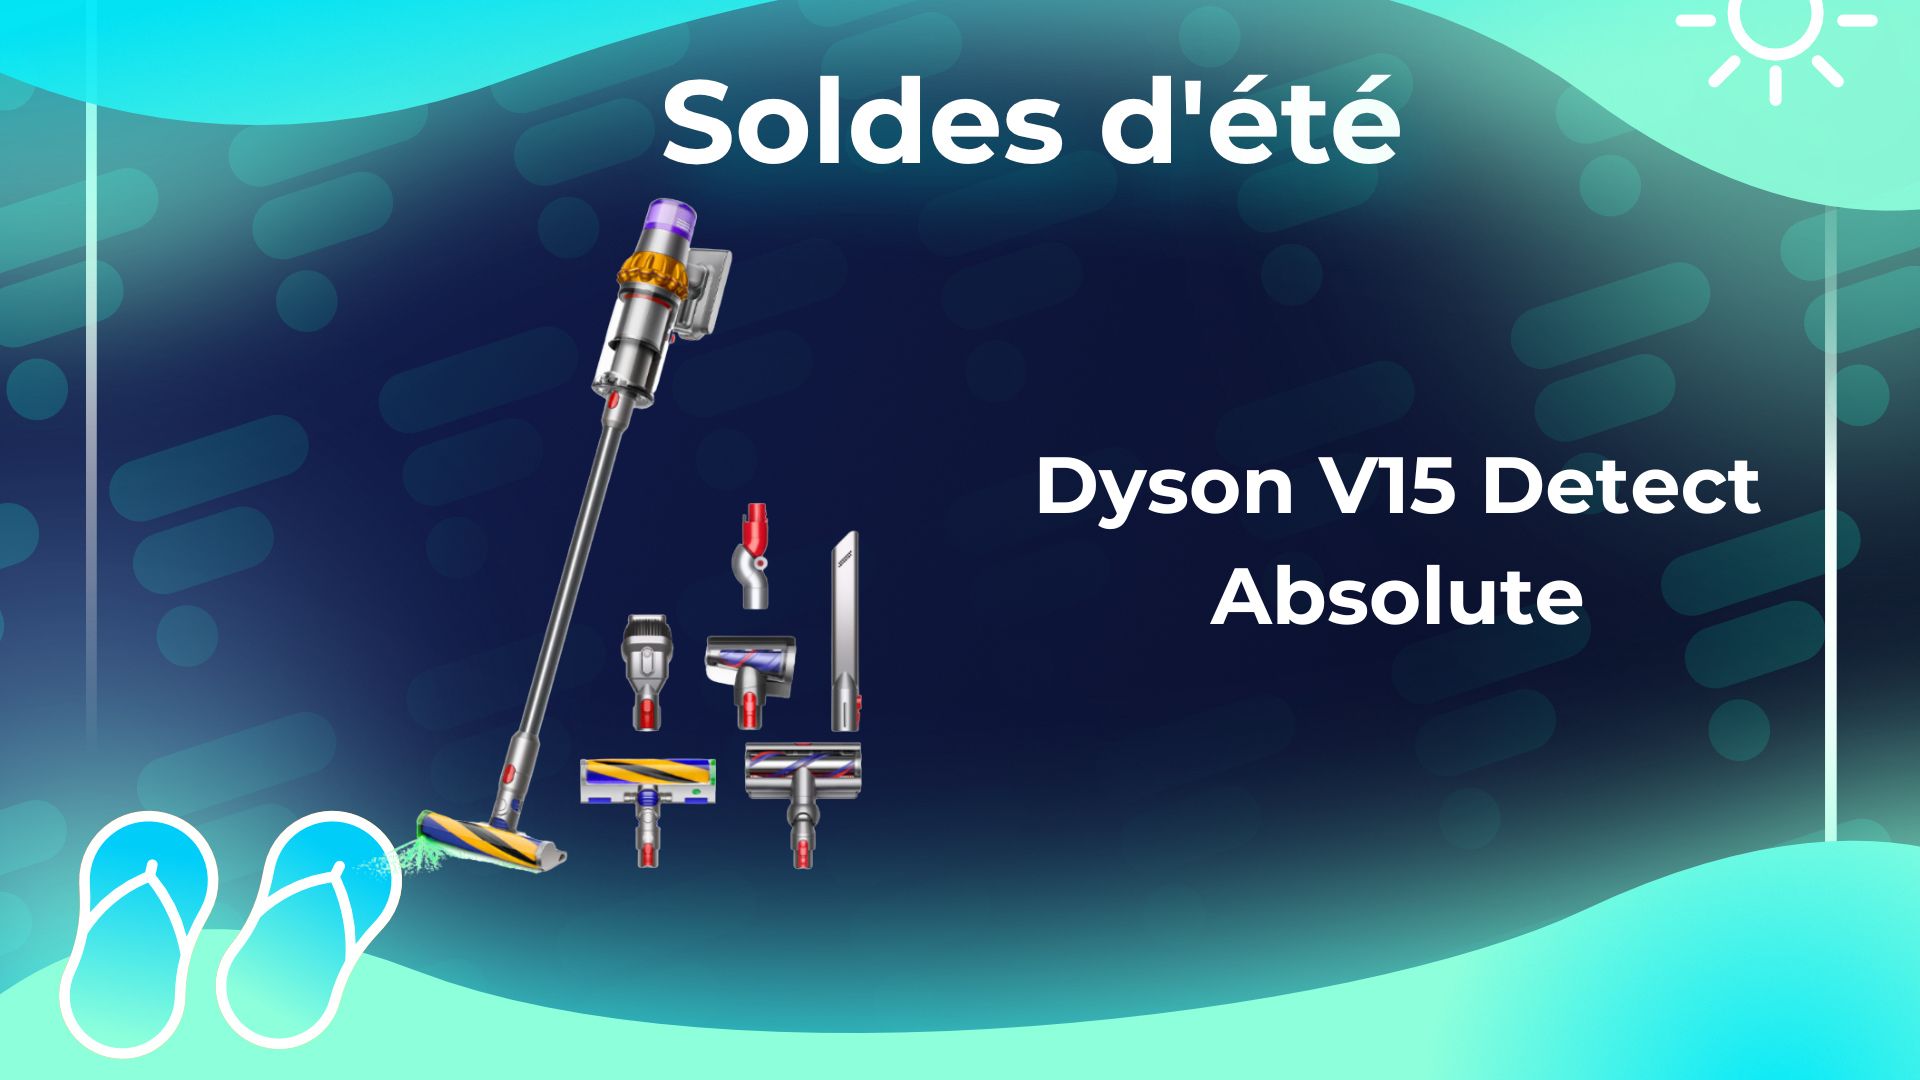 V15 Detect Absolute : Dyson fait perdre 200 € à son balai aspirateur avant  la fin des soldes